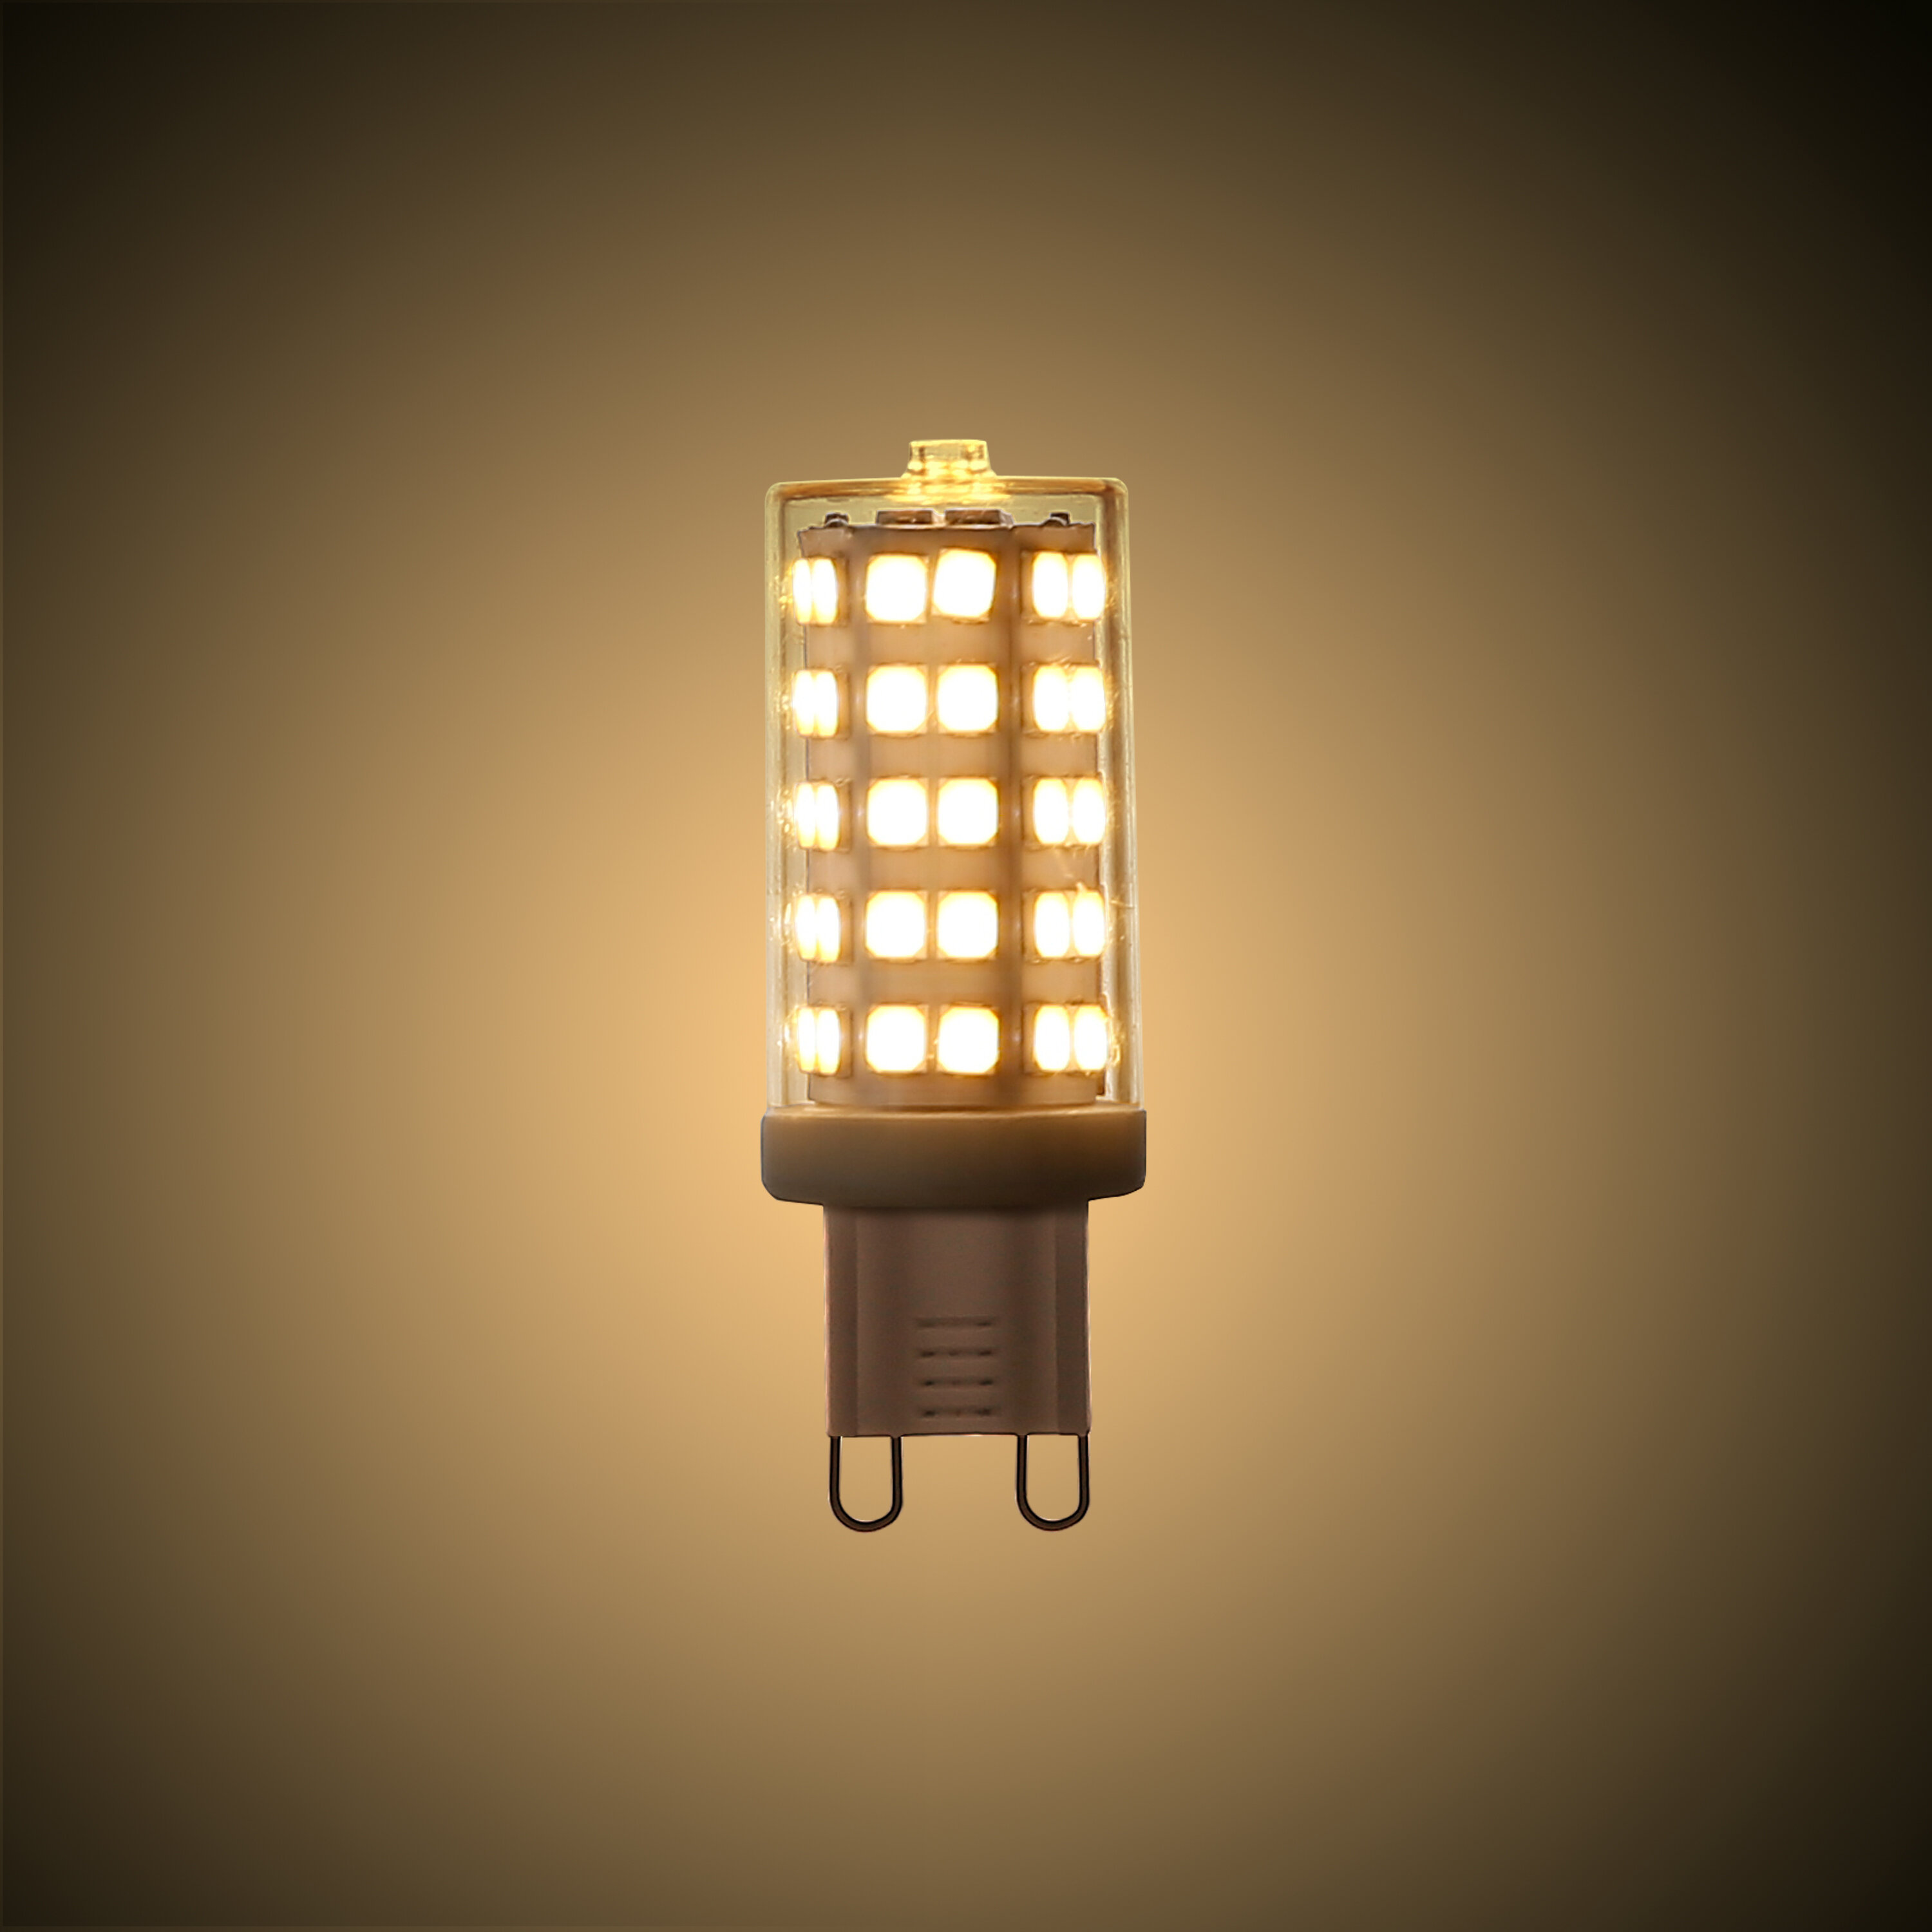 kans stil sectie Light Society 4 Watt (40 Watt Equivalent), G9 LED, Dimmable Light Bulb,  Warm White (3000K) G9/Bi-pin Base & Reviews | Wayfair